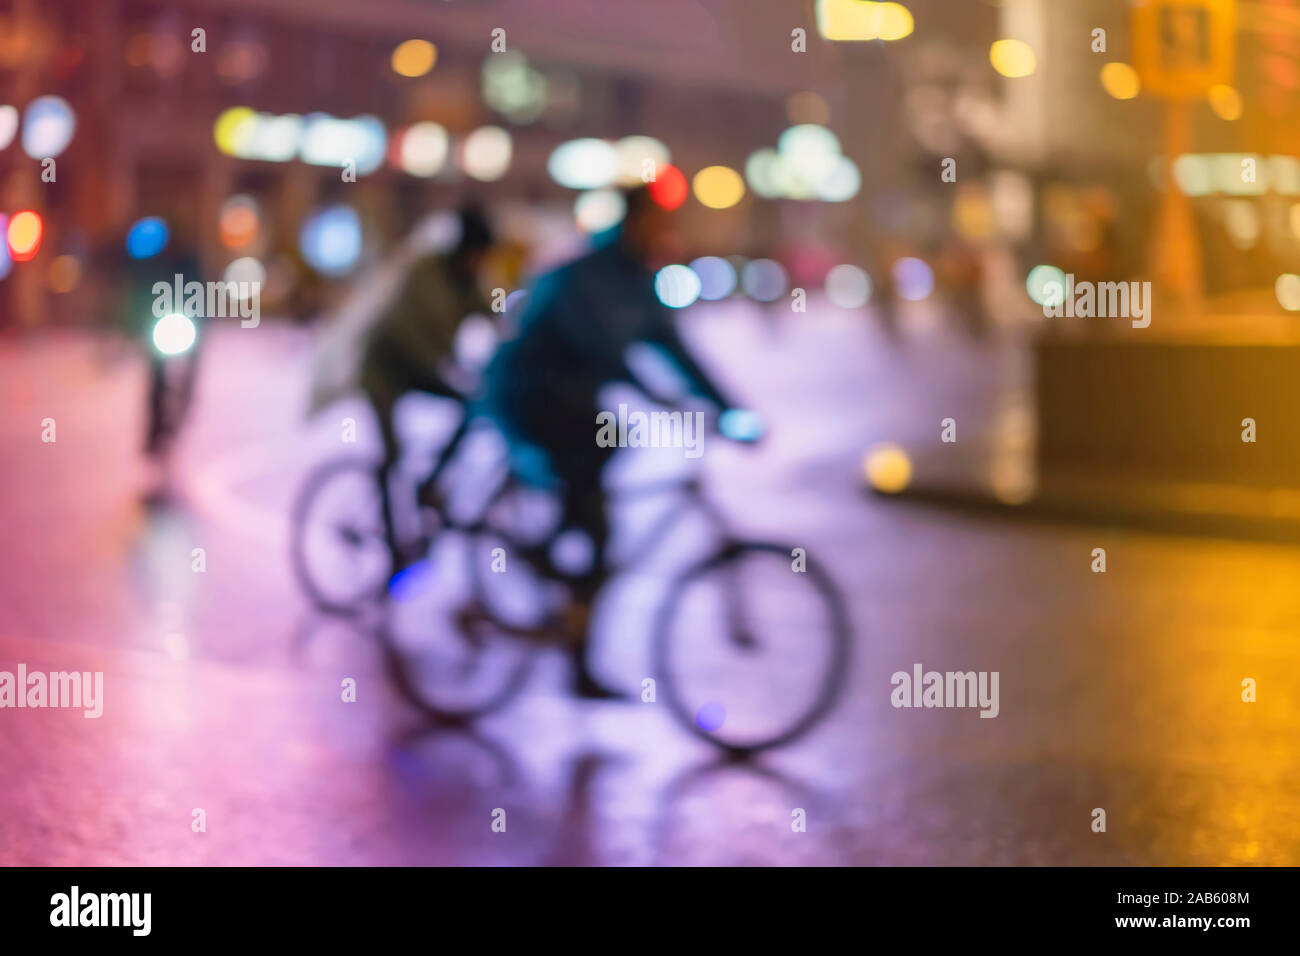 Abstract irriconoscibile la gente, equitazione biciclette, night city, illuminazione bokeh, motion blur. Uno stile di vita sano, attività di svago di concetto. Foto Stock